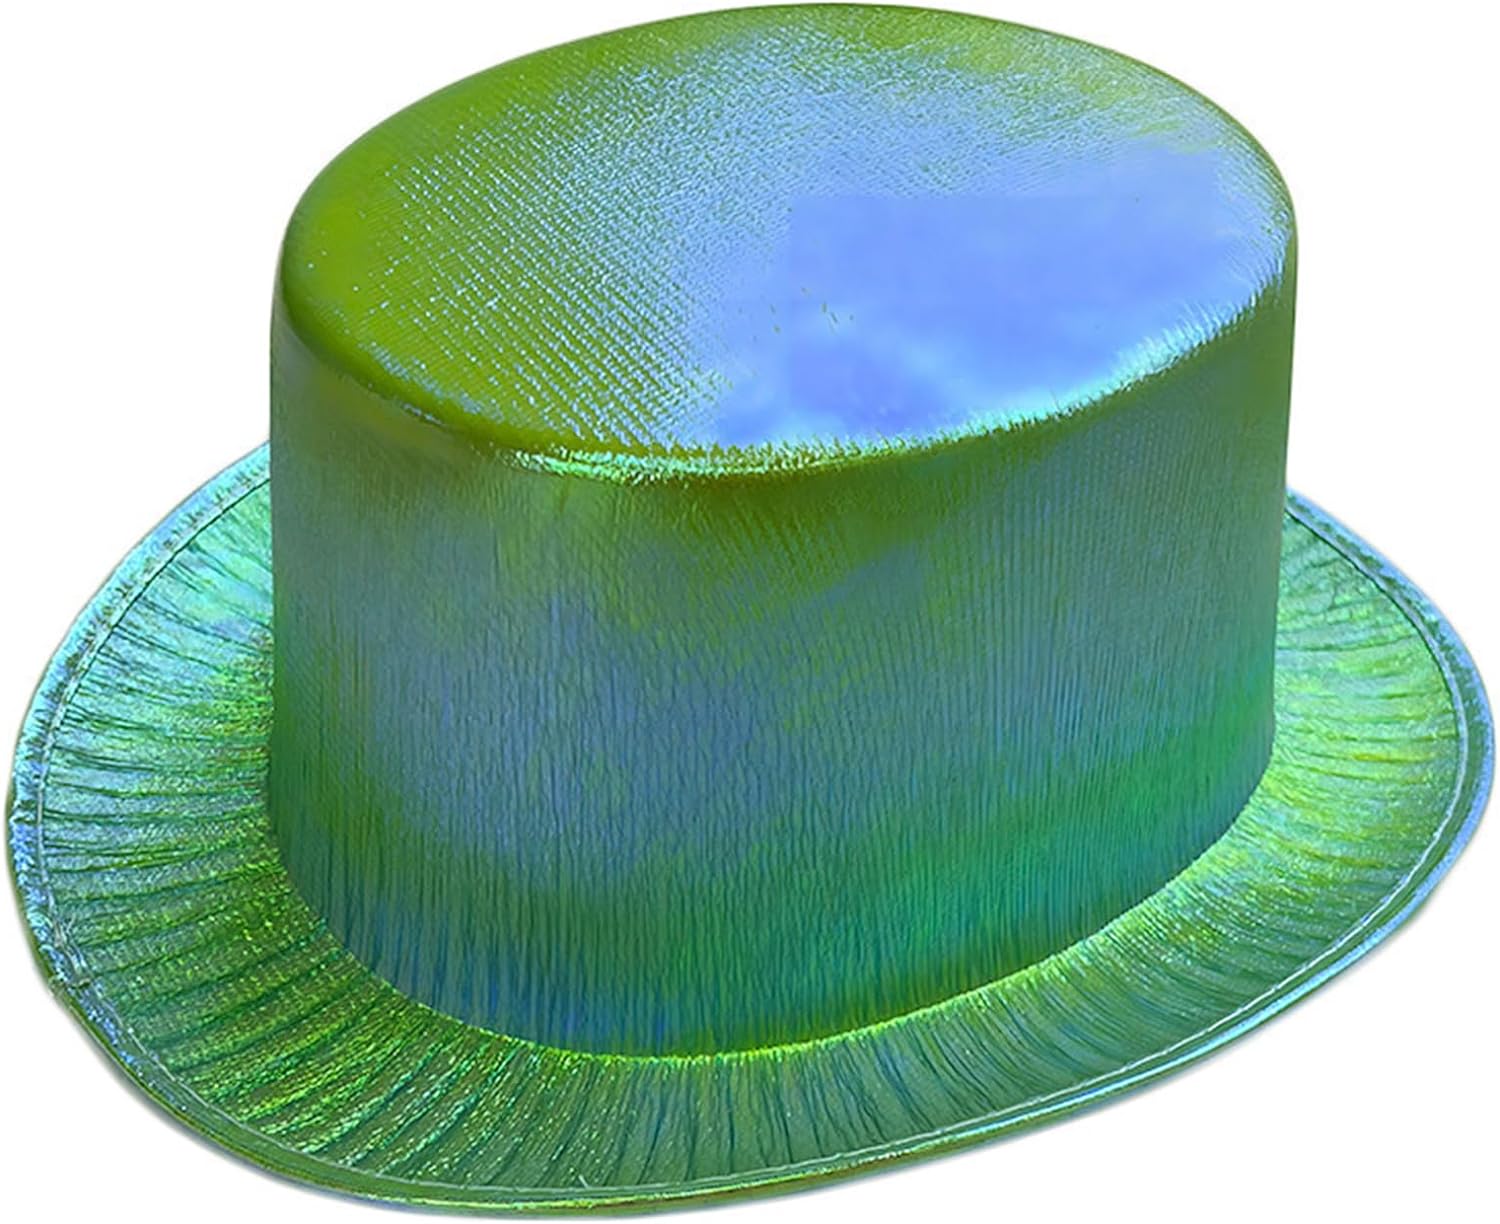 Yeşil Renk Işıltılı Hologram Kumaş Kaplama Fötr Silindir Şapka Yetişkin Boy  (CLZ)